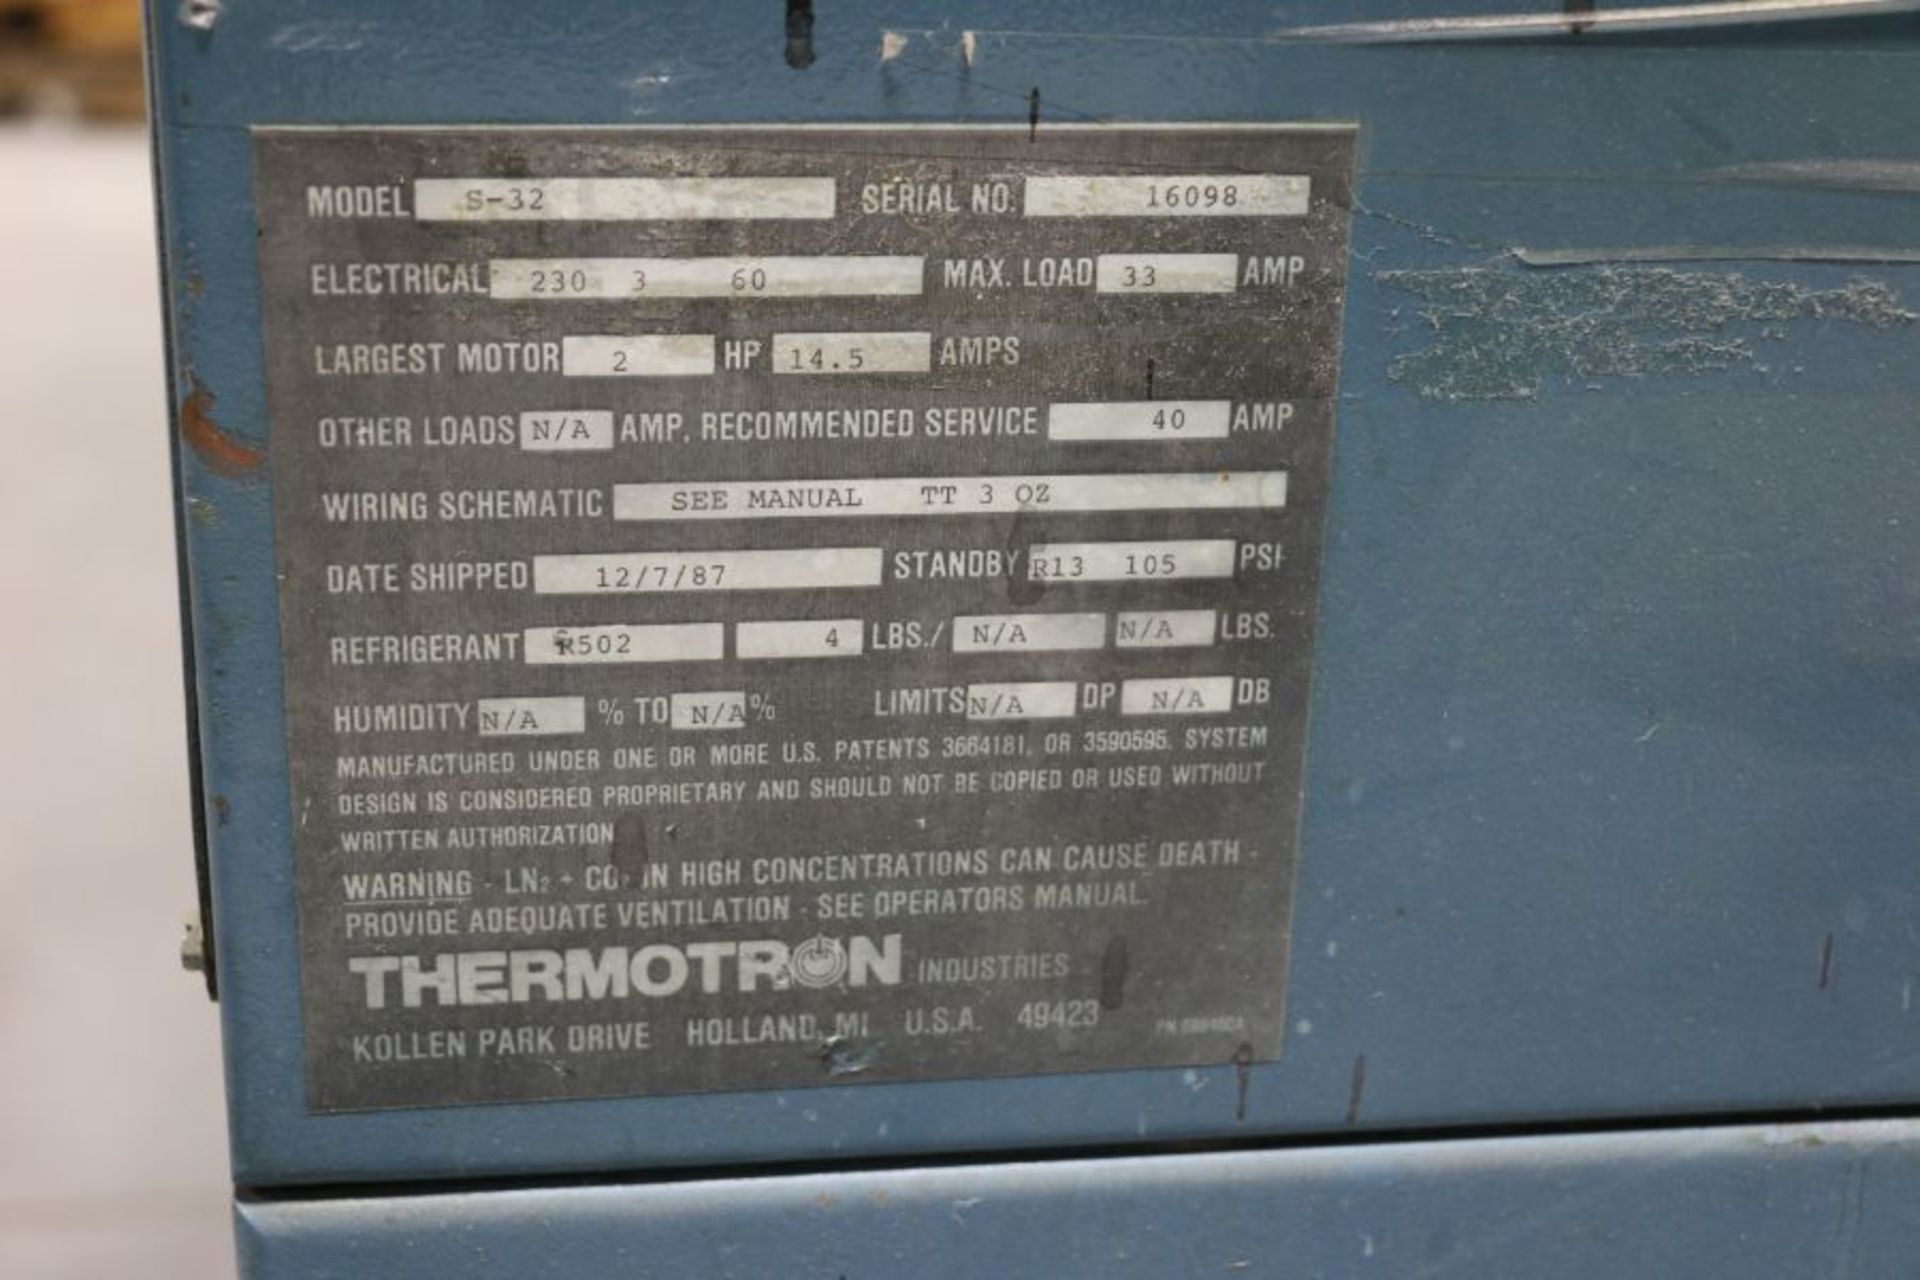 Thermotron S-32 Oven, 36" x 36" x 36" Work Envelope, 100 - 310 Degrees F Range, 240V, New 1987 - Image 5 of 6